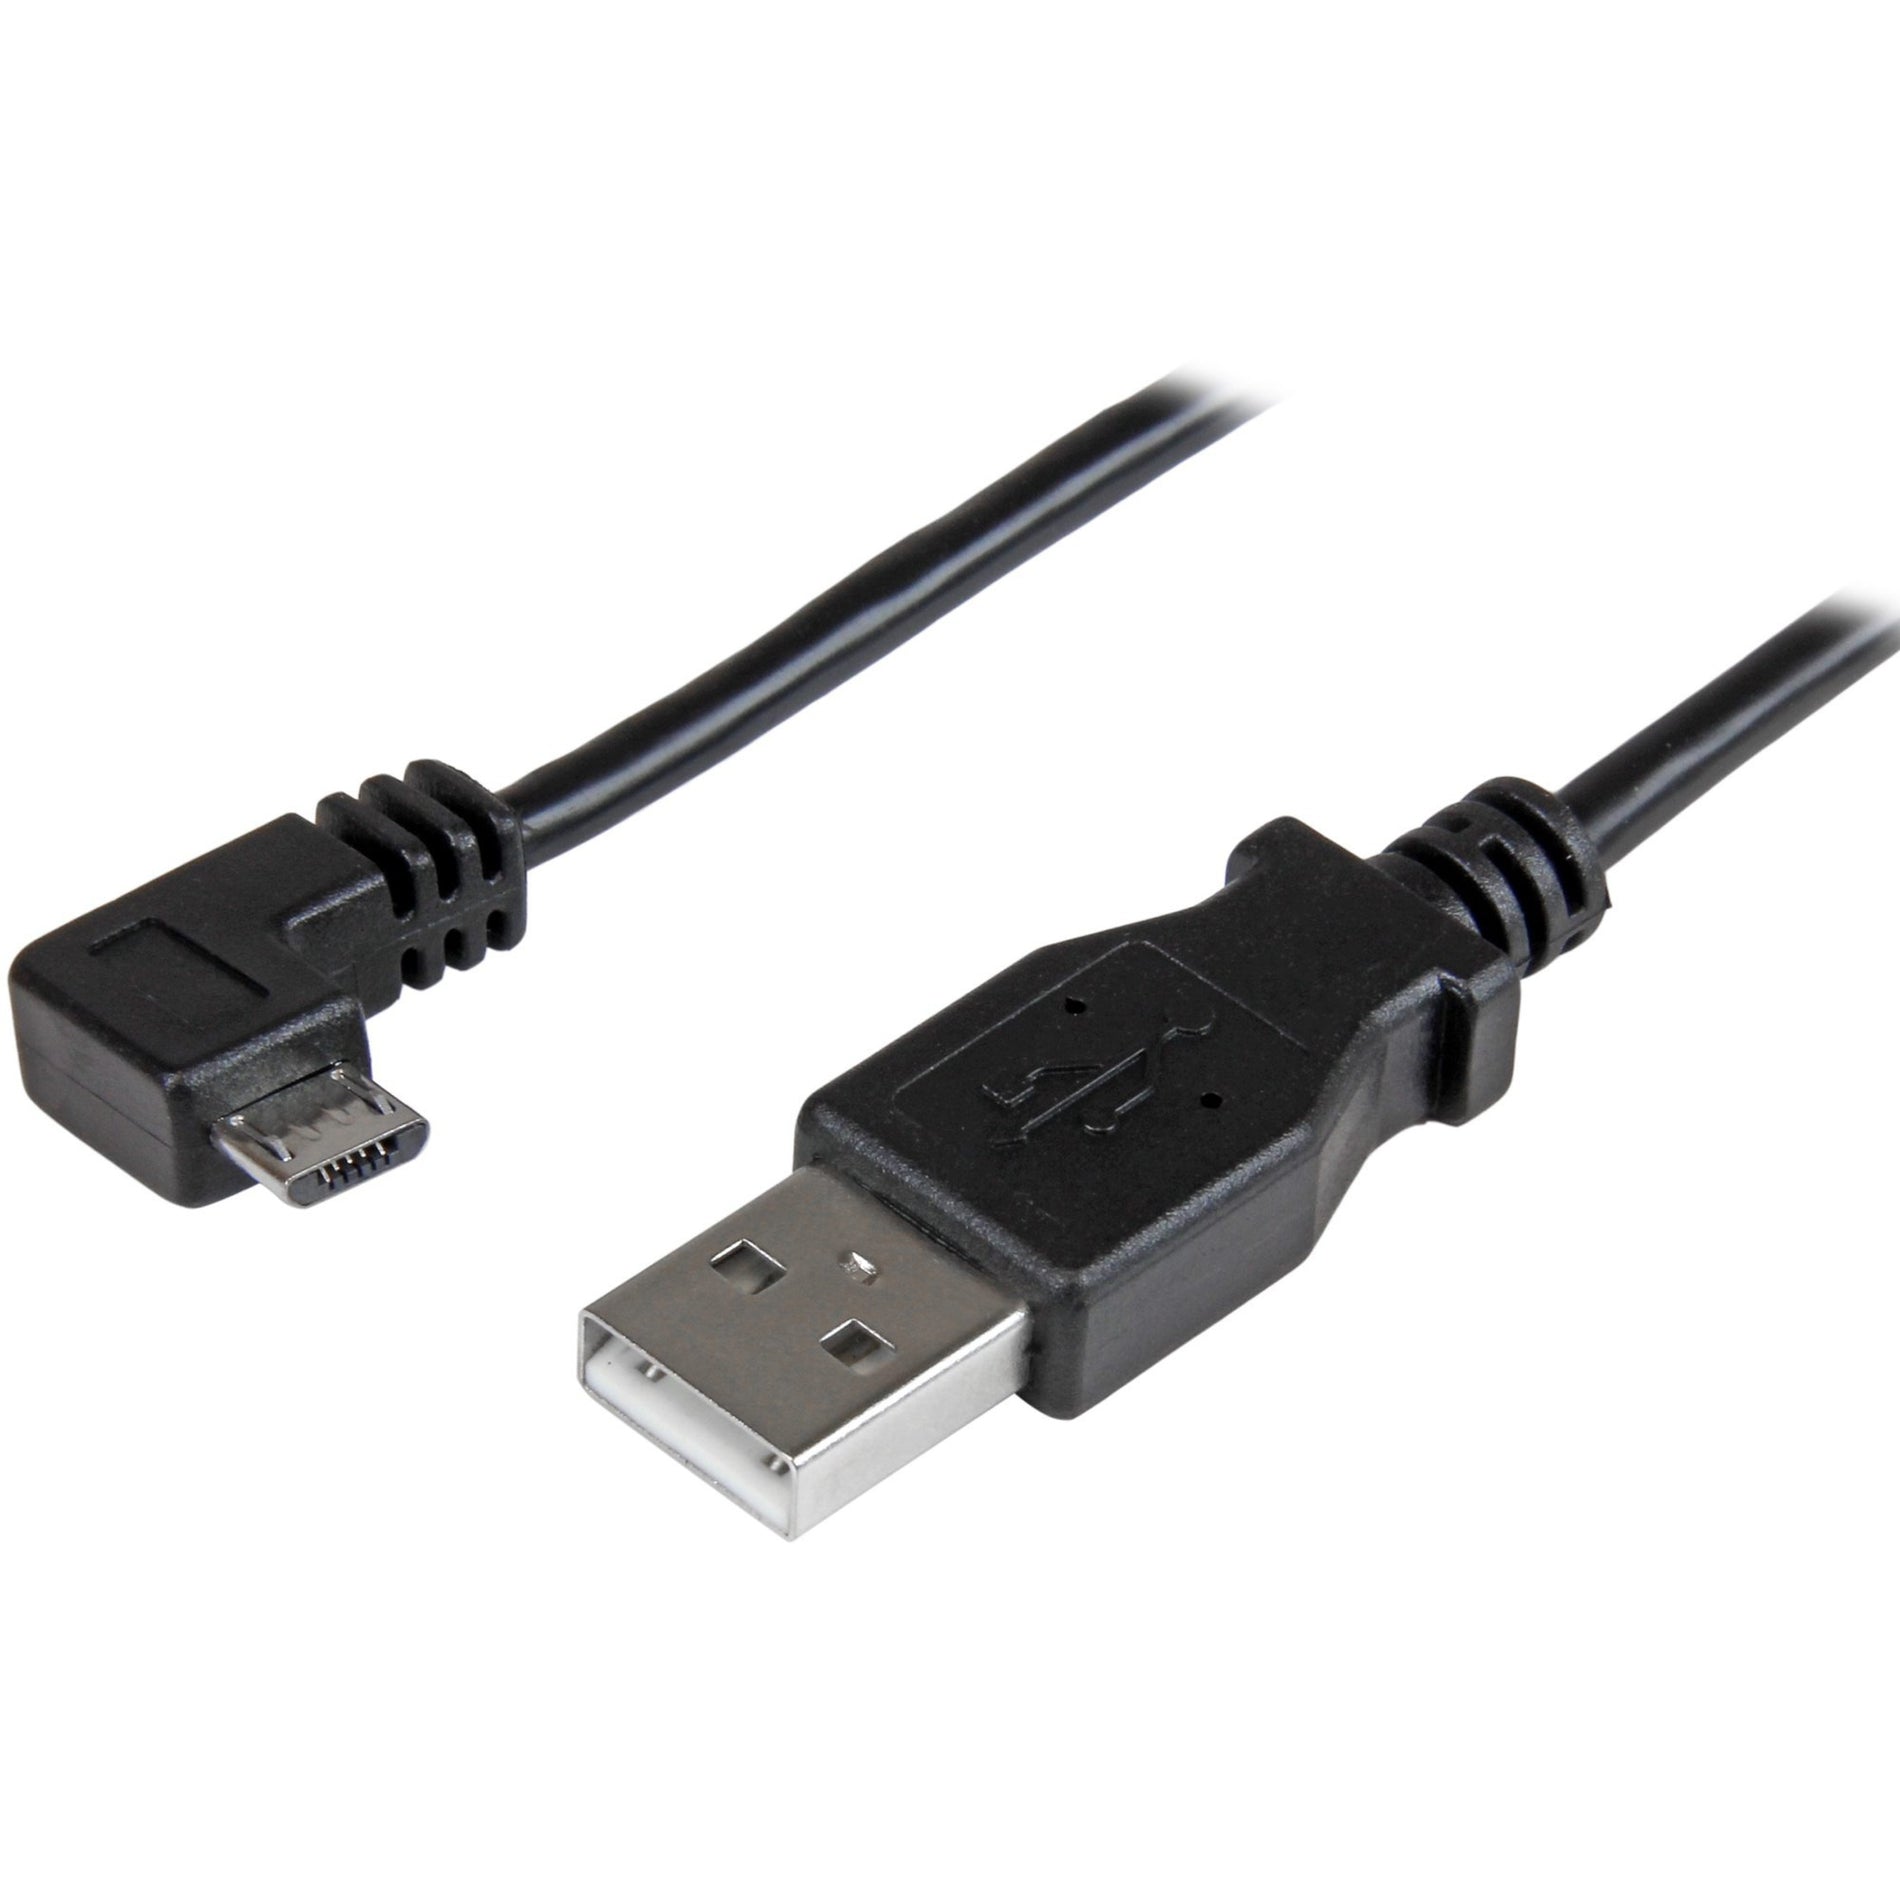 StarTech.com USBAUB1MRA 1m Right-Angle Micro-USB 2.0 Charging Cable 3.28 ft Black  スターテック・ドットコム USBAUB1MRA 1メートル ライトアングル マイクロUSB 2.0 充電ケーブル、3.28 フィート、ブラック